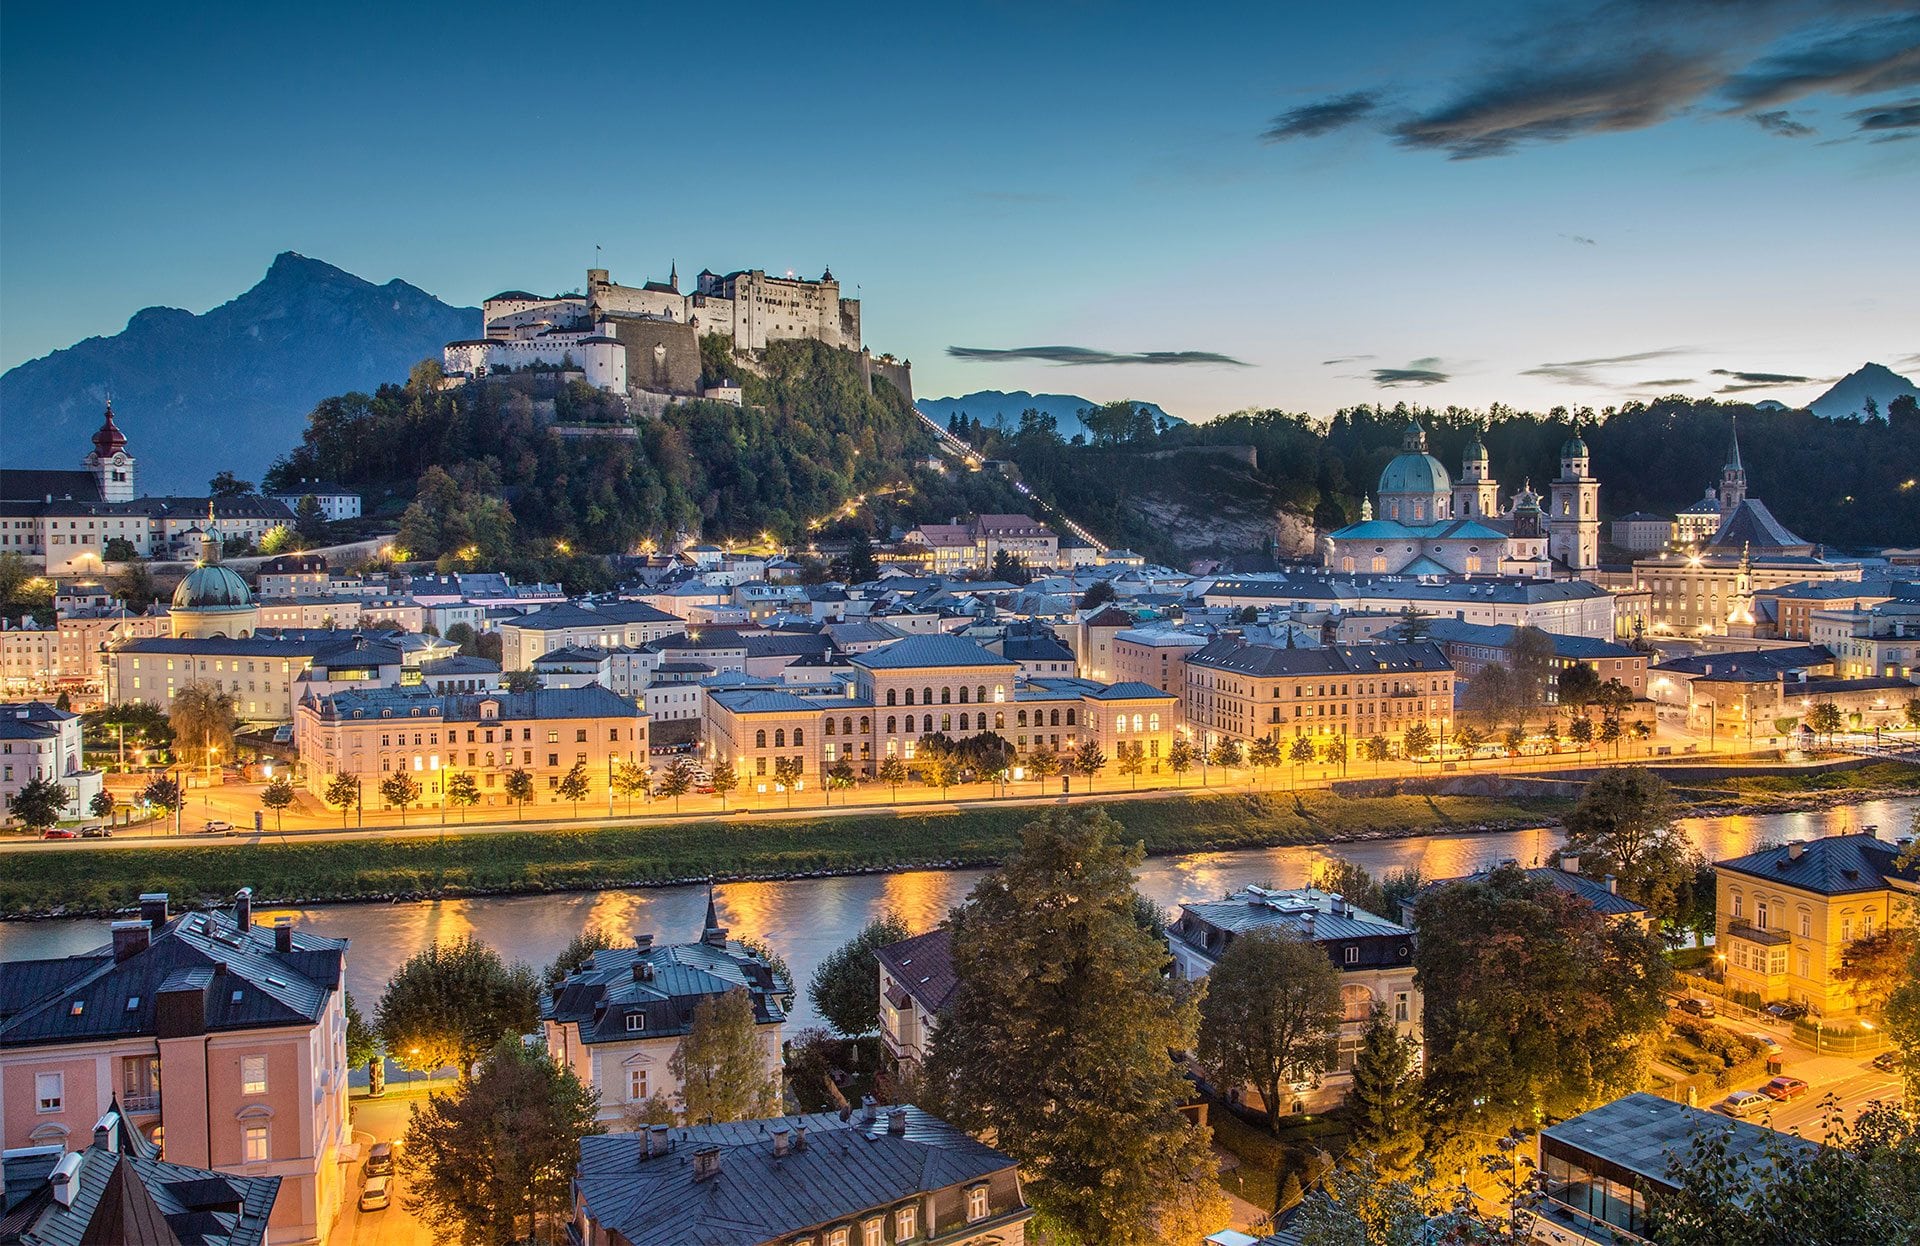 Ausflugstipps & Ausflugsziele im Salzburger Land & in der Stadt Salzburg